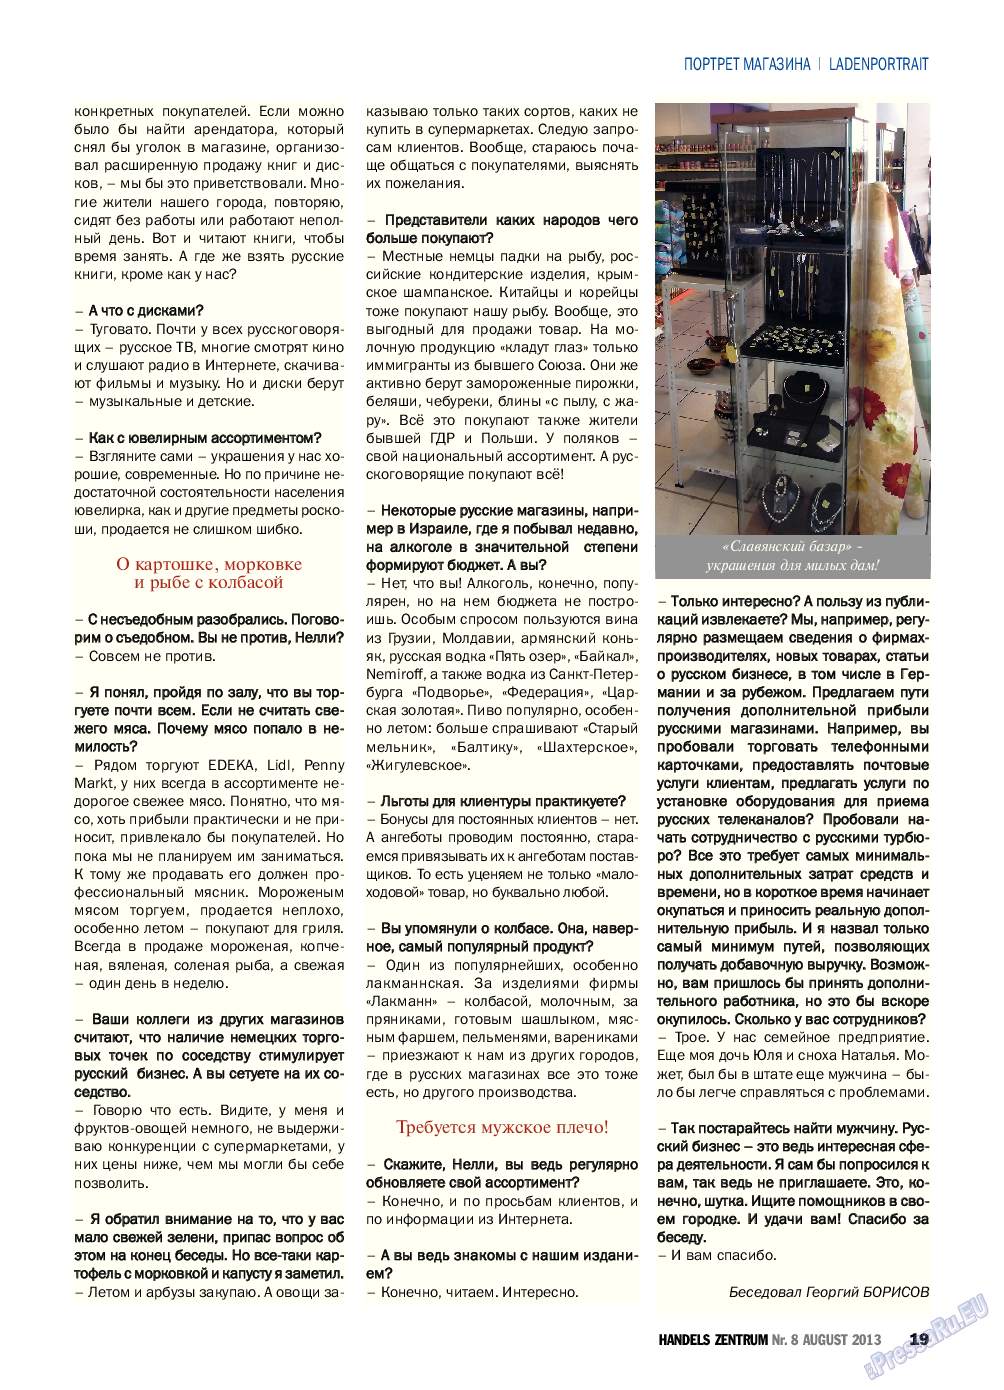 Торговый Центр (журнал). 2013 год, номер 8, стр. 19